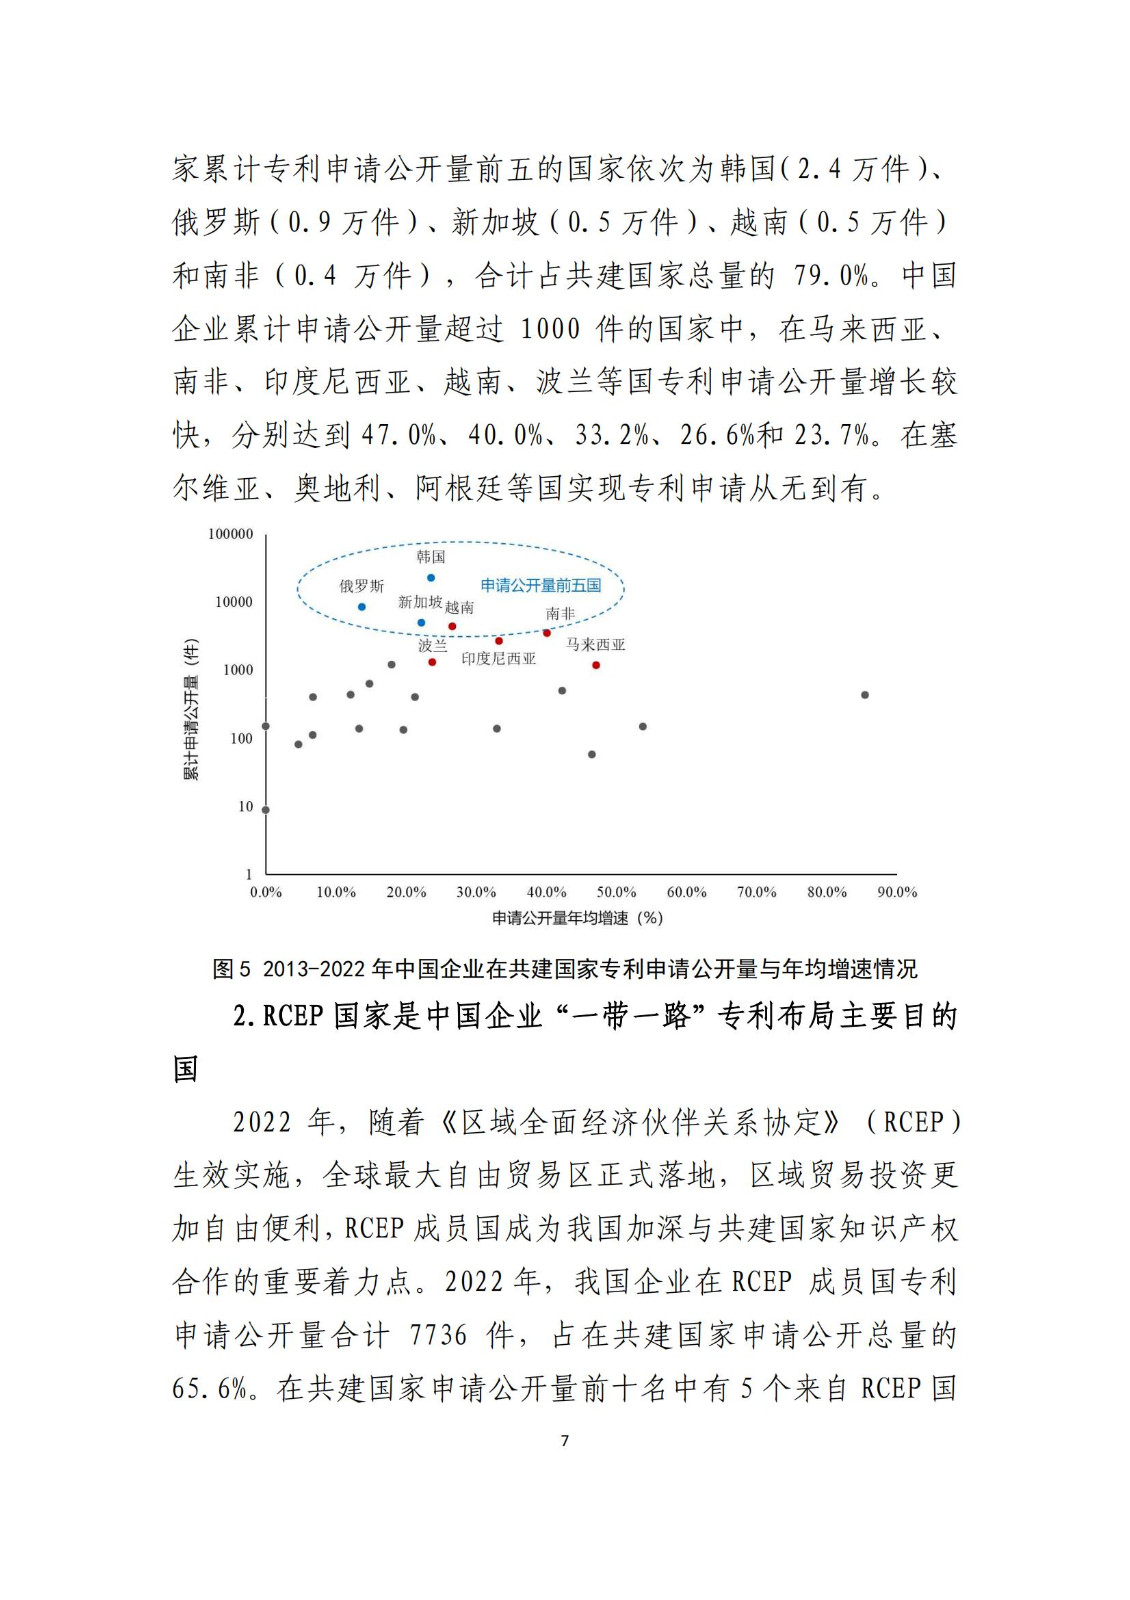 《中国与共建“一带一路”国家十周年专利统计报告（2013-2022年）》全文发布！